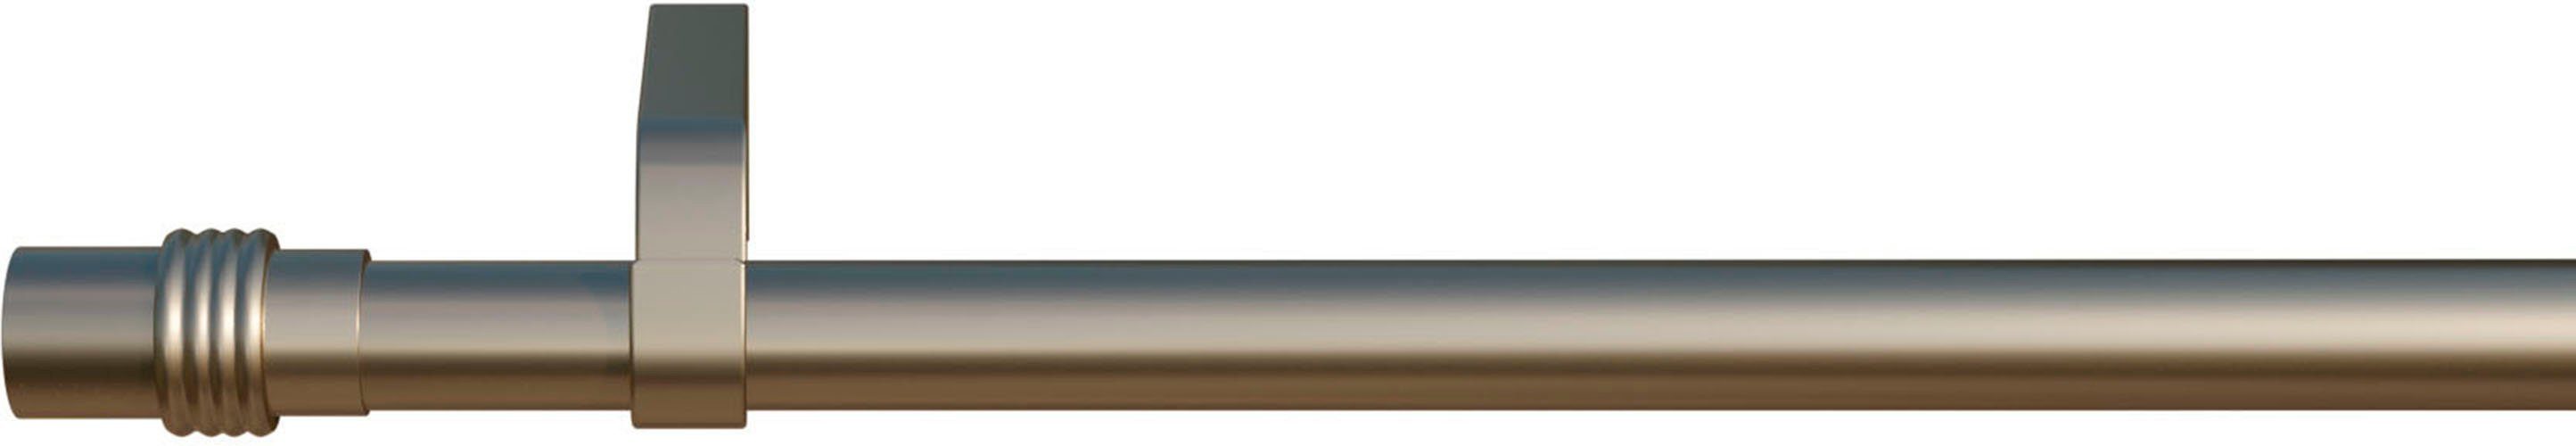 1-läufig, Ø verschraubt, silberfarben mm, 16 Zylinder, mit Wunschmaßlänge, Eisen indeko, Bohren, Gardinenstange